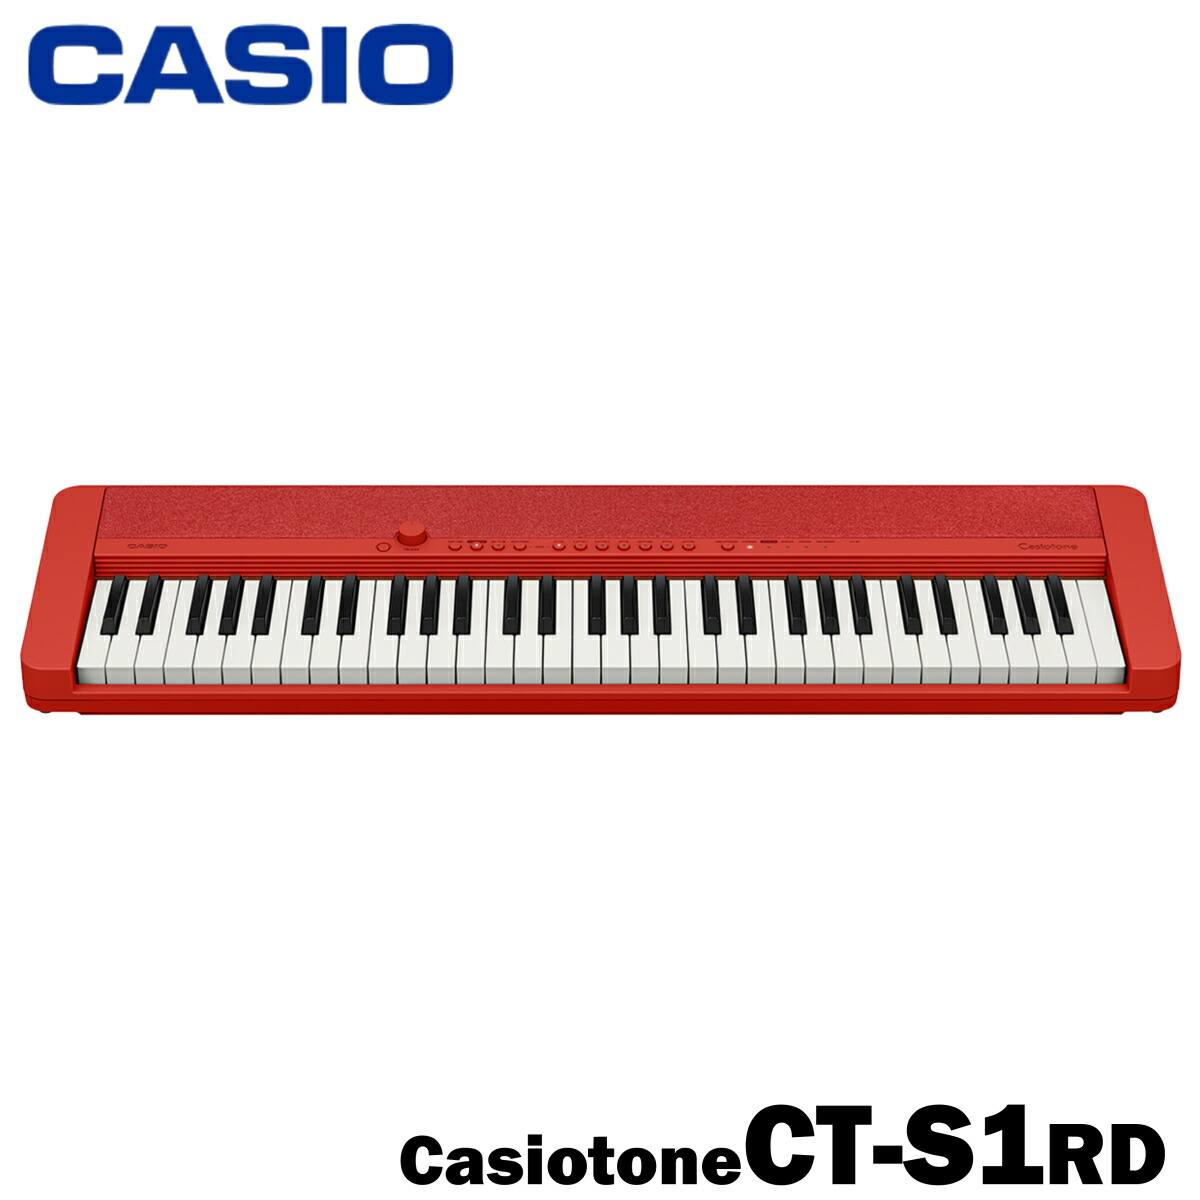 CASIO キーボード Casiotone CT-S1RD / レッド